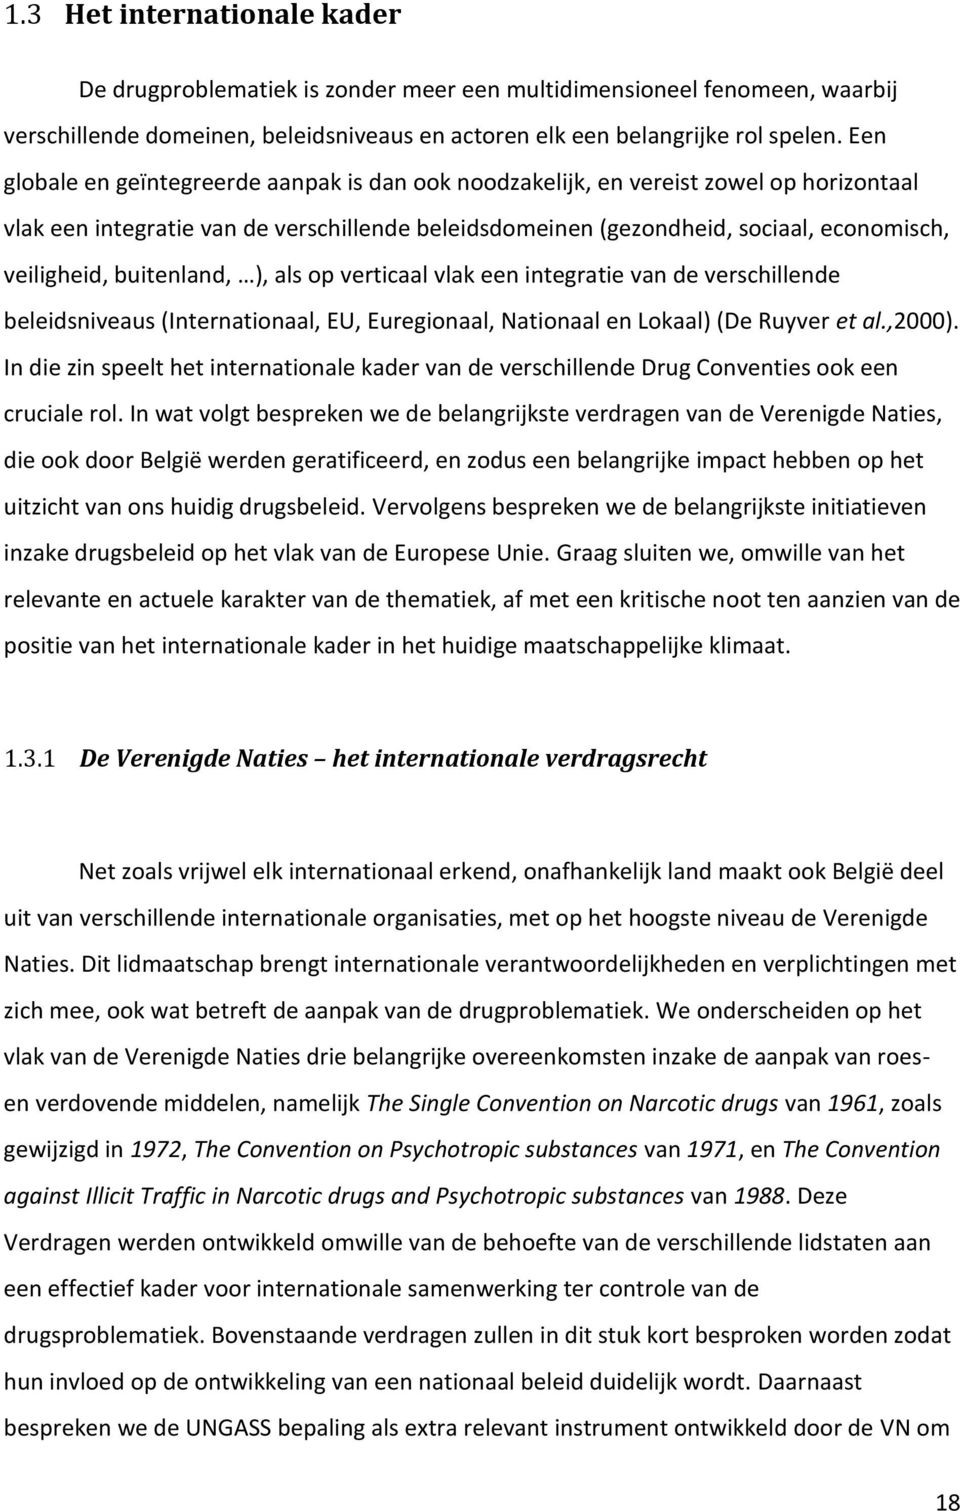 buitenland, ), als op verticaal vlak een integratie van de verschillende beleidsniveaus (Internationaal, EU, Euregionaal, Nationaal en Lokaal) (De Ruyver et al.,2000).